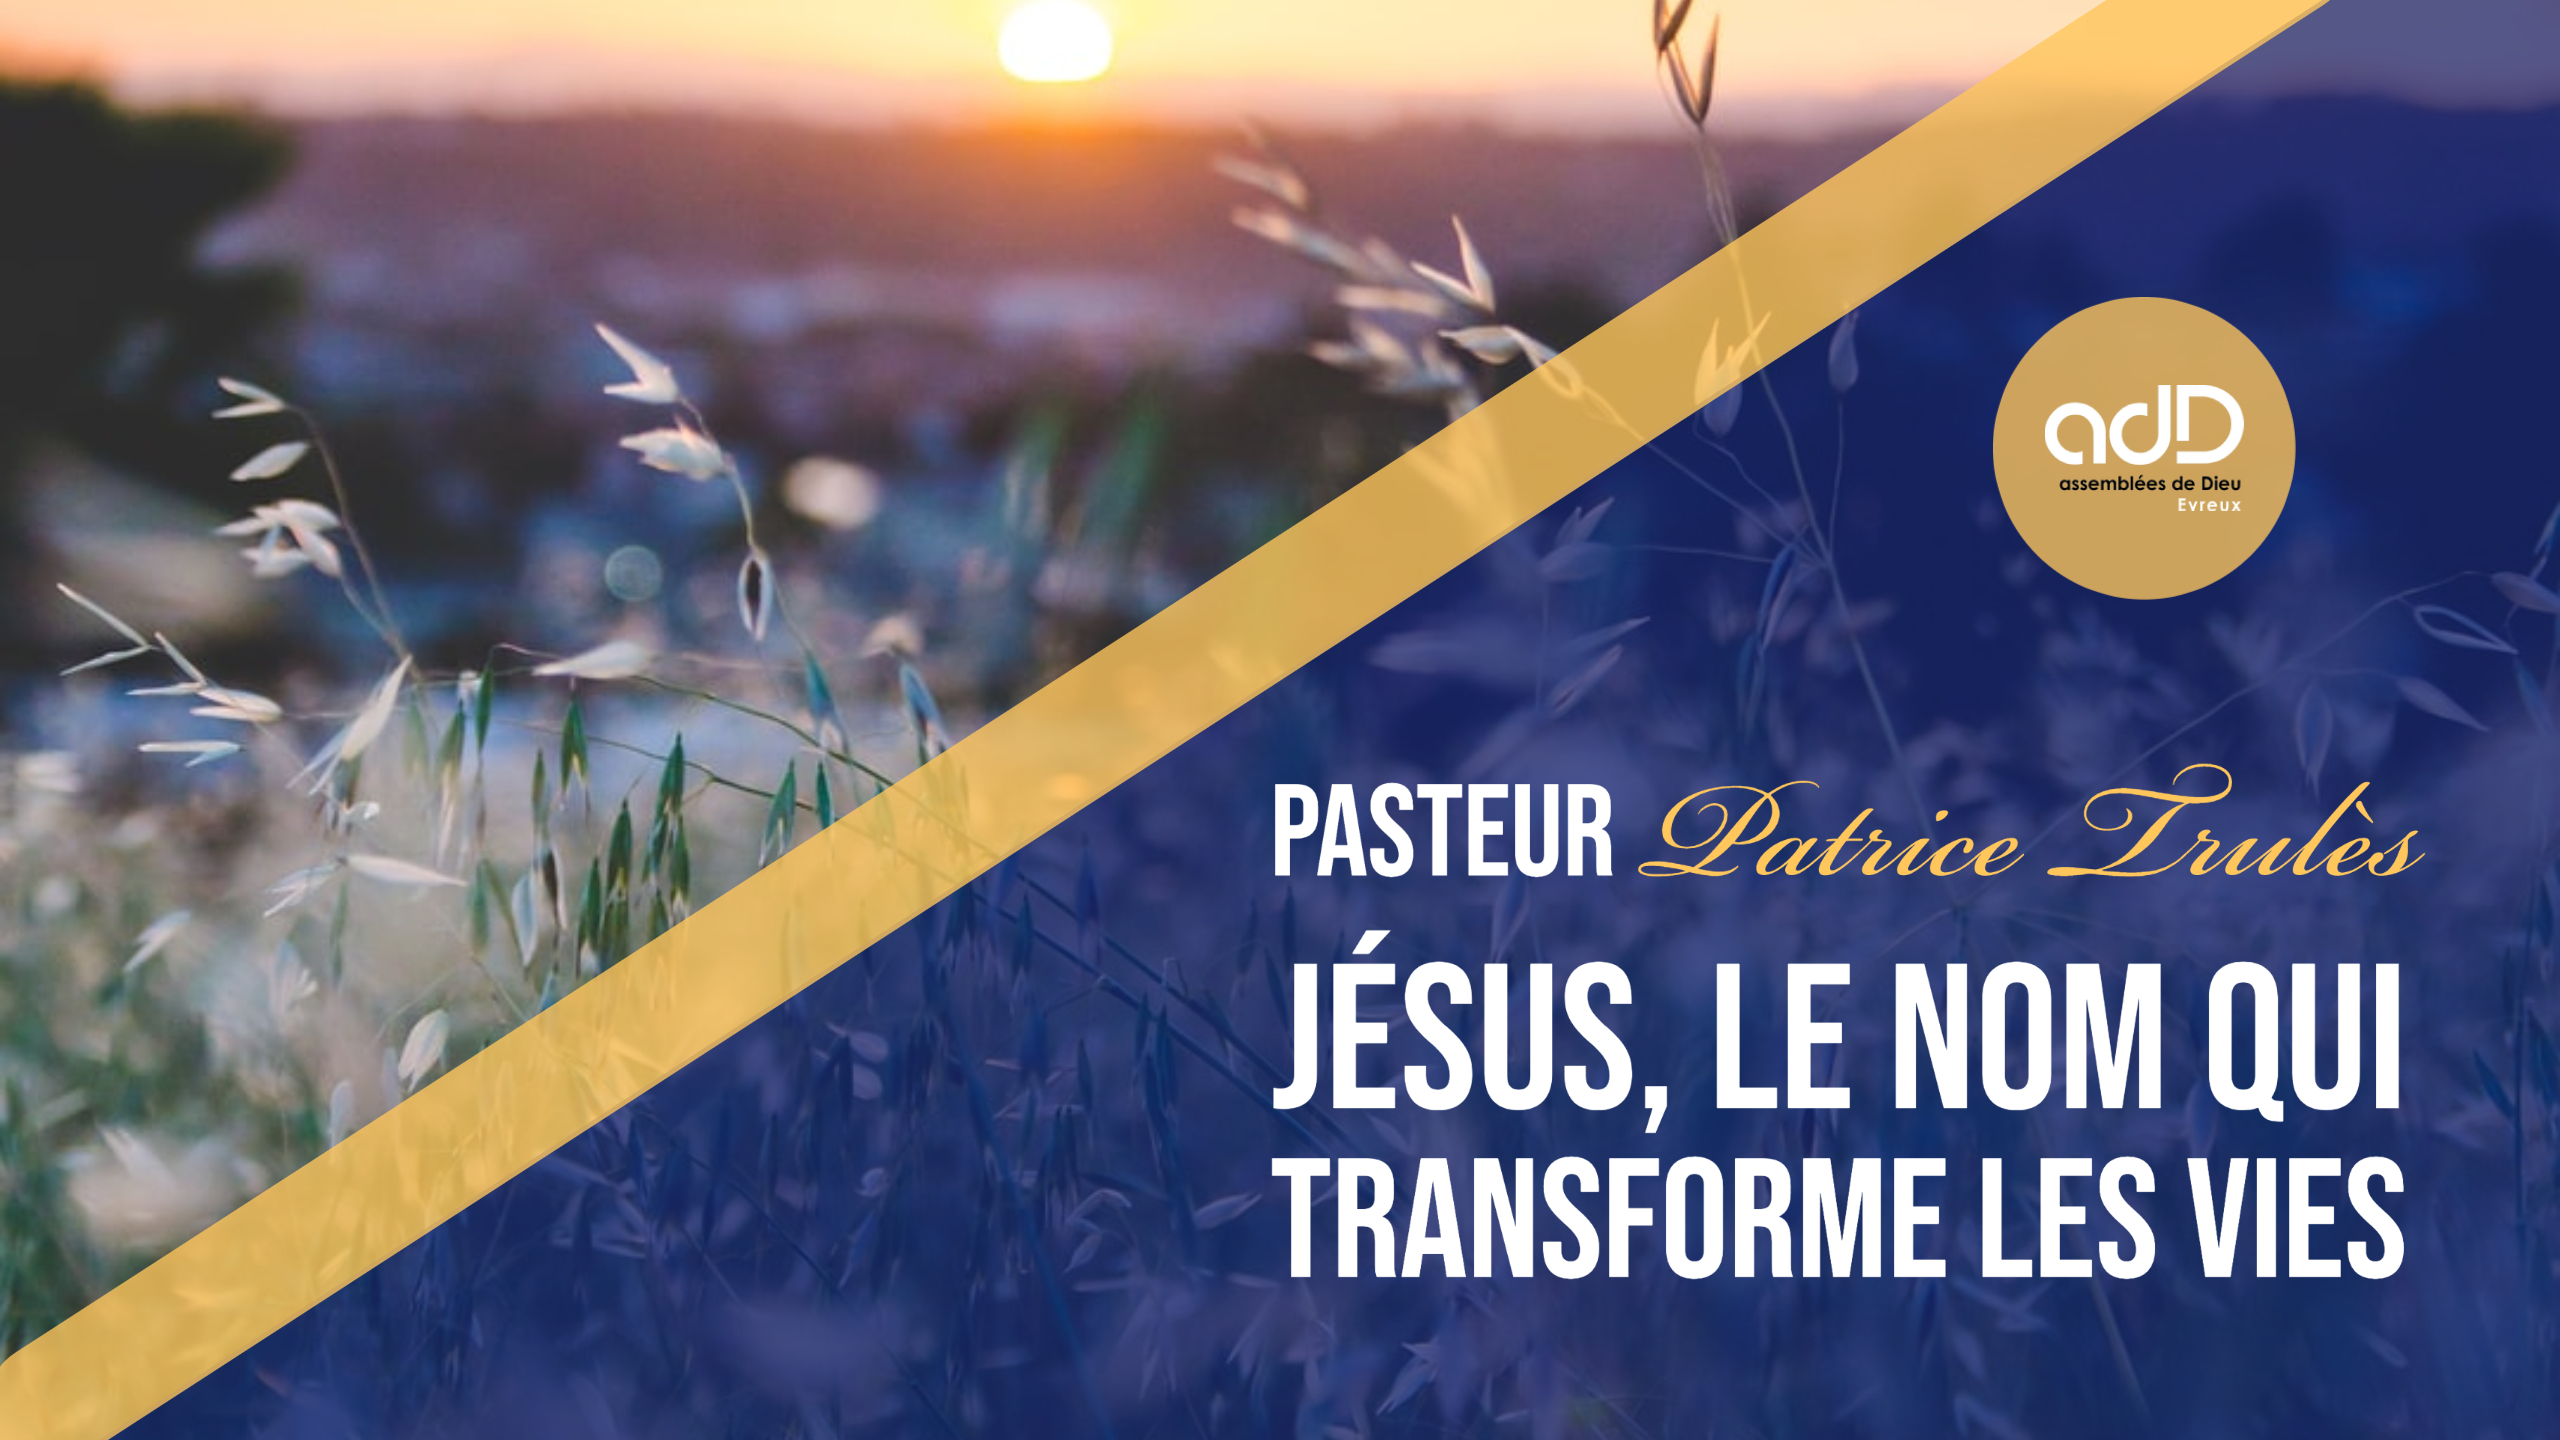 Featured image for “Culte en direct | « Jésus, le nom qui transforme les vies » | Pasteur Patrice Trules”